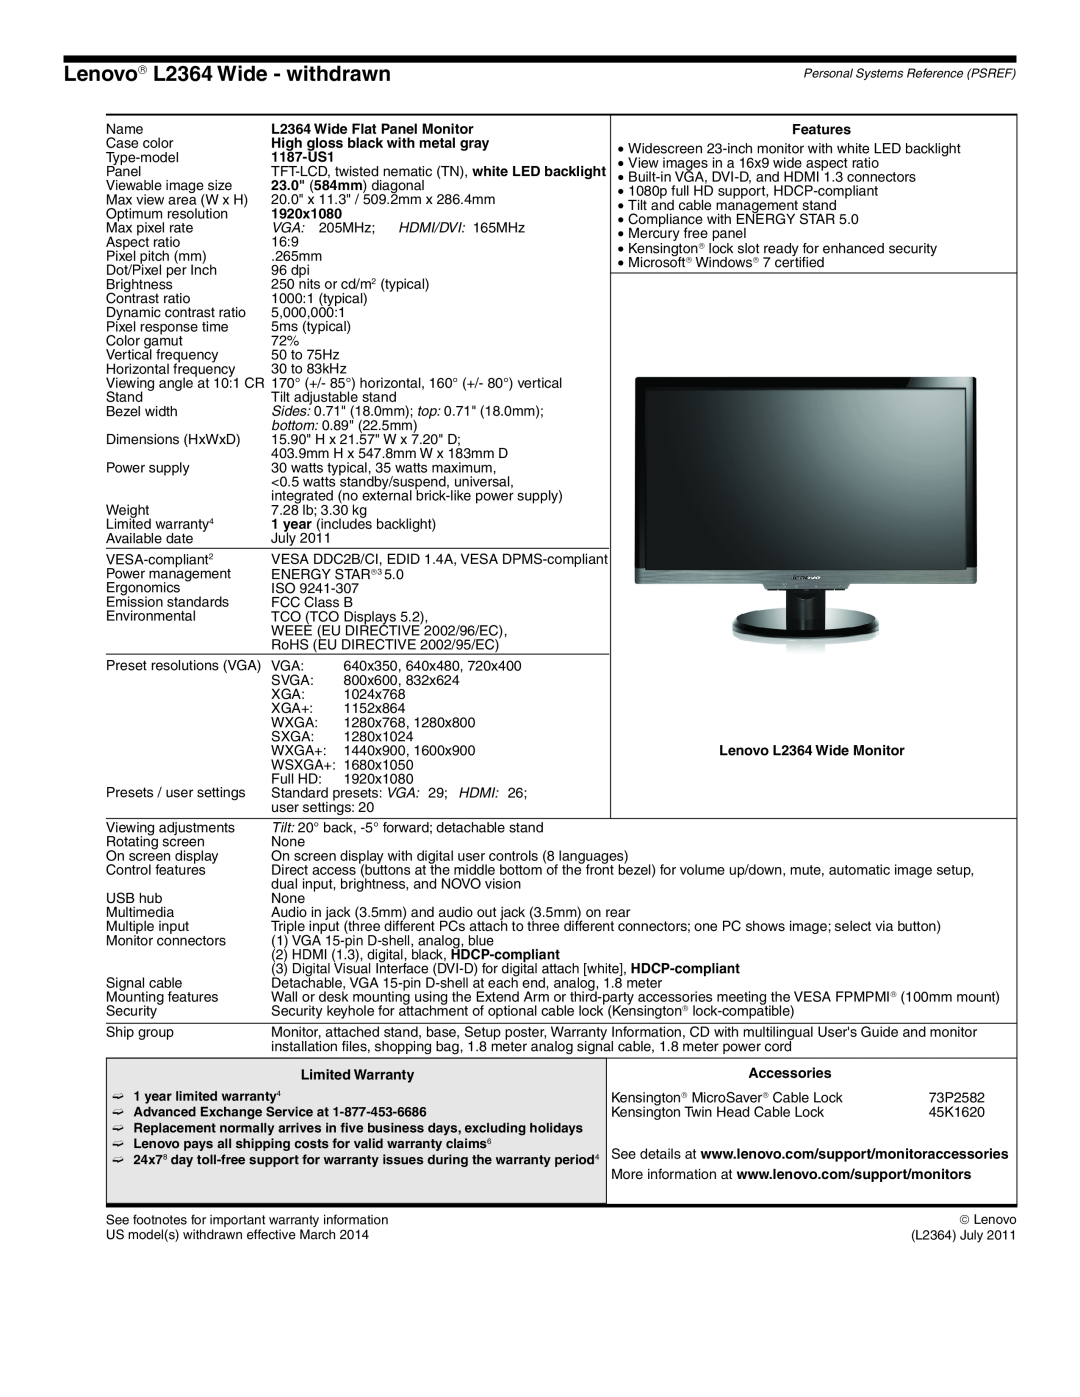 Lenovo L2363D manual Lenovo→ L2364 Wide - withdrawn, VGA 205MHz HDMI/DVI 165MHz 